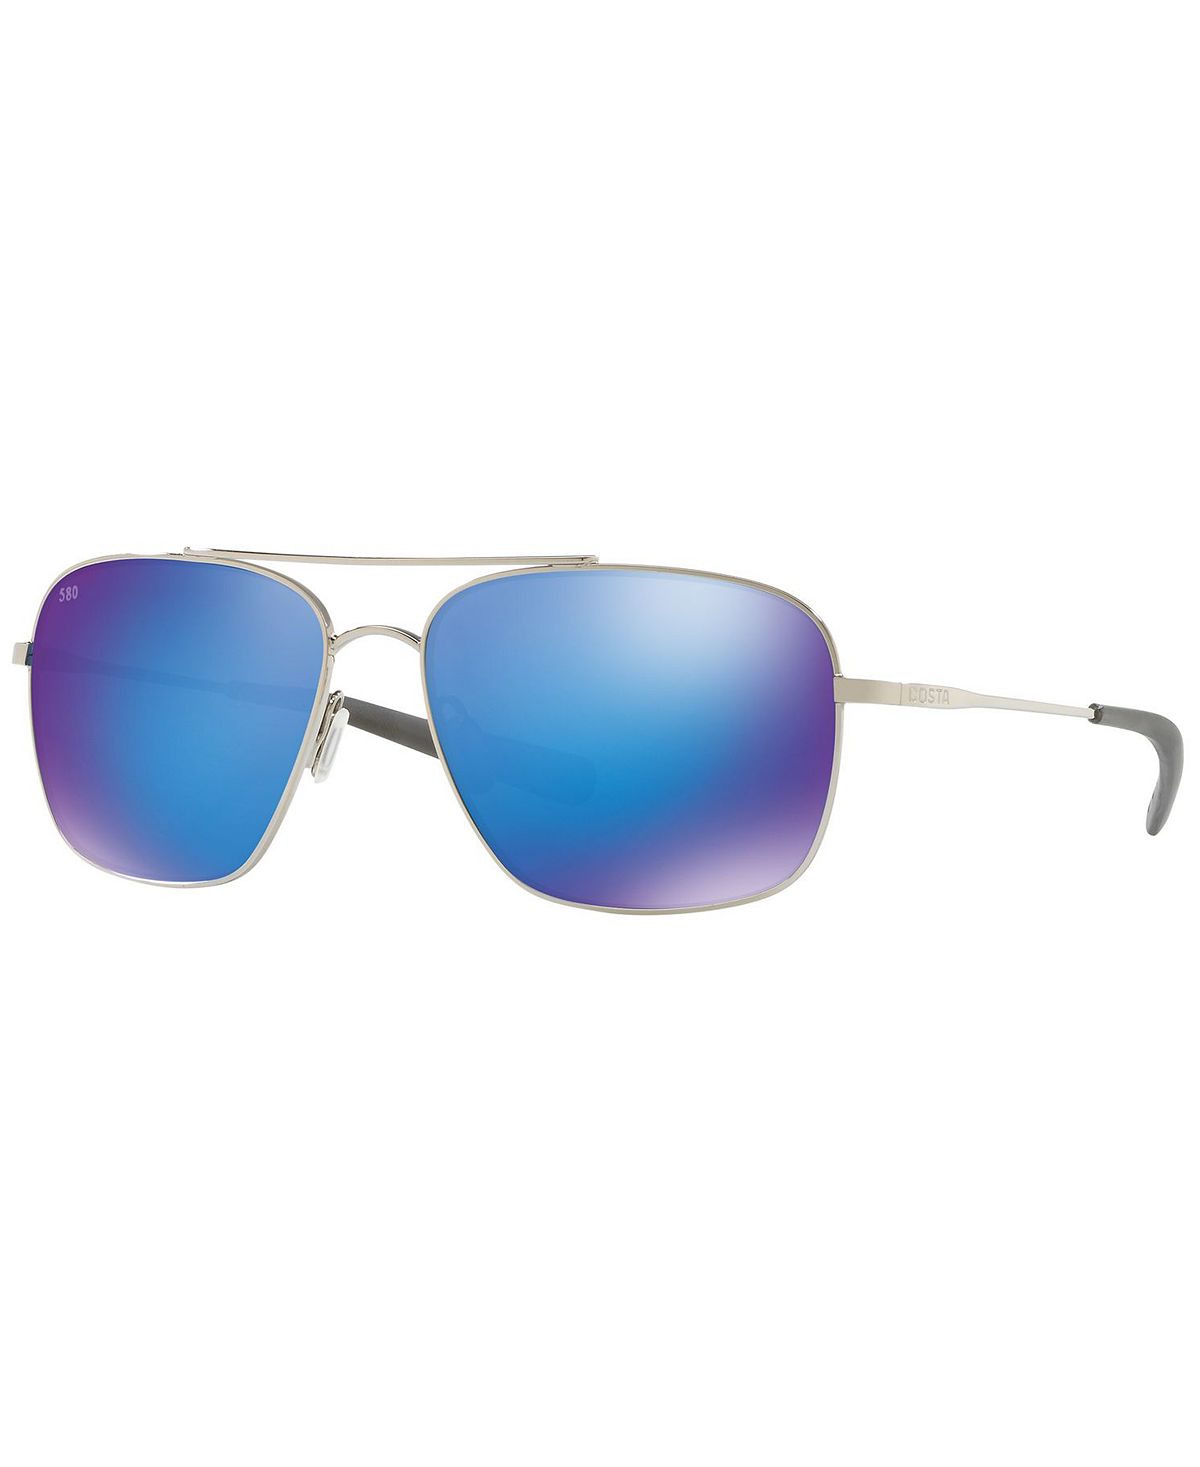 Поляризованные солнцезащитные очки, CANAVERAL 59 Costa Del Mar